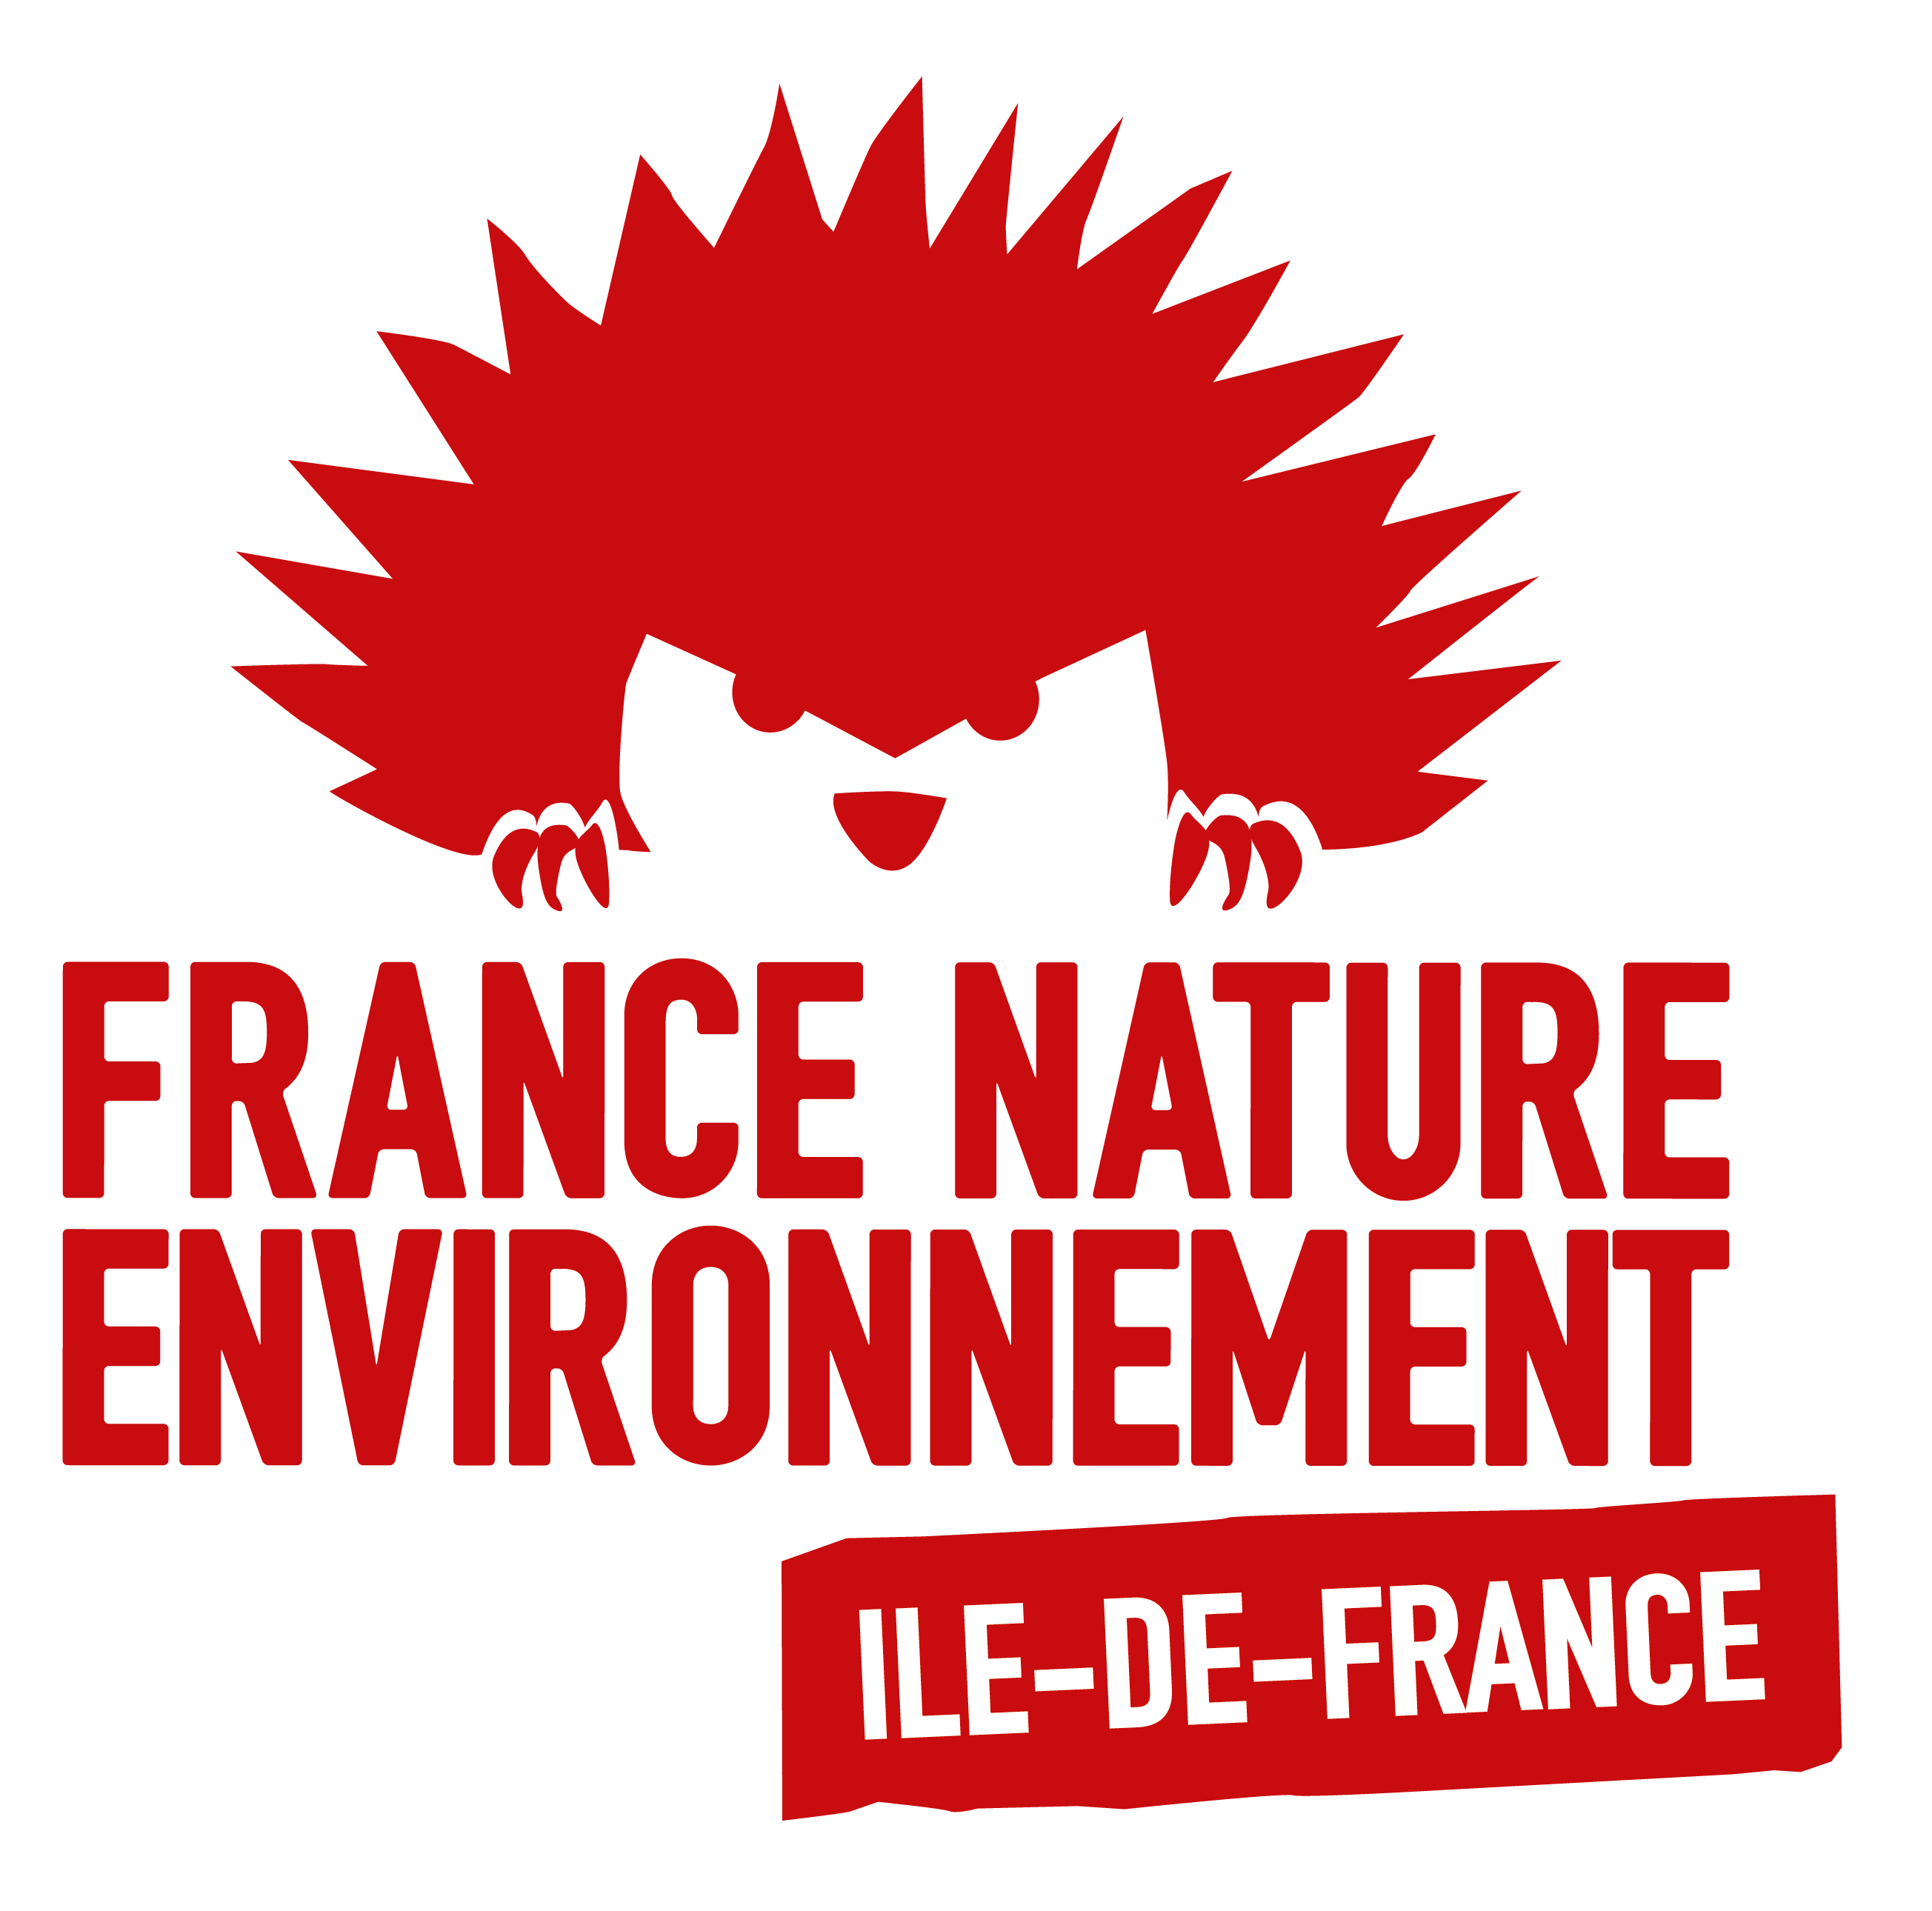 France Nature Environnement Ile-de-France